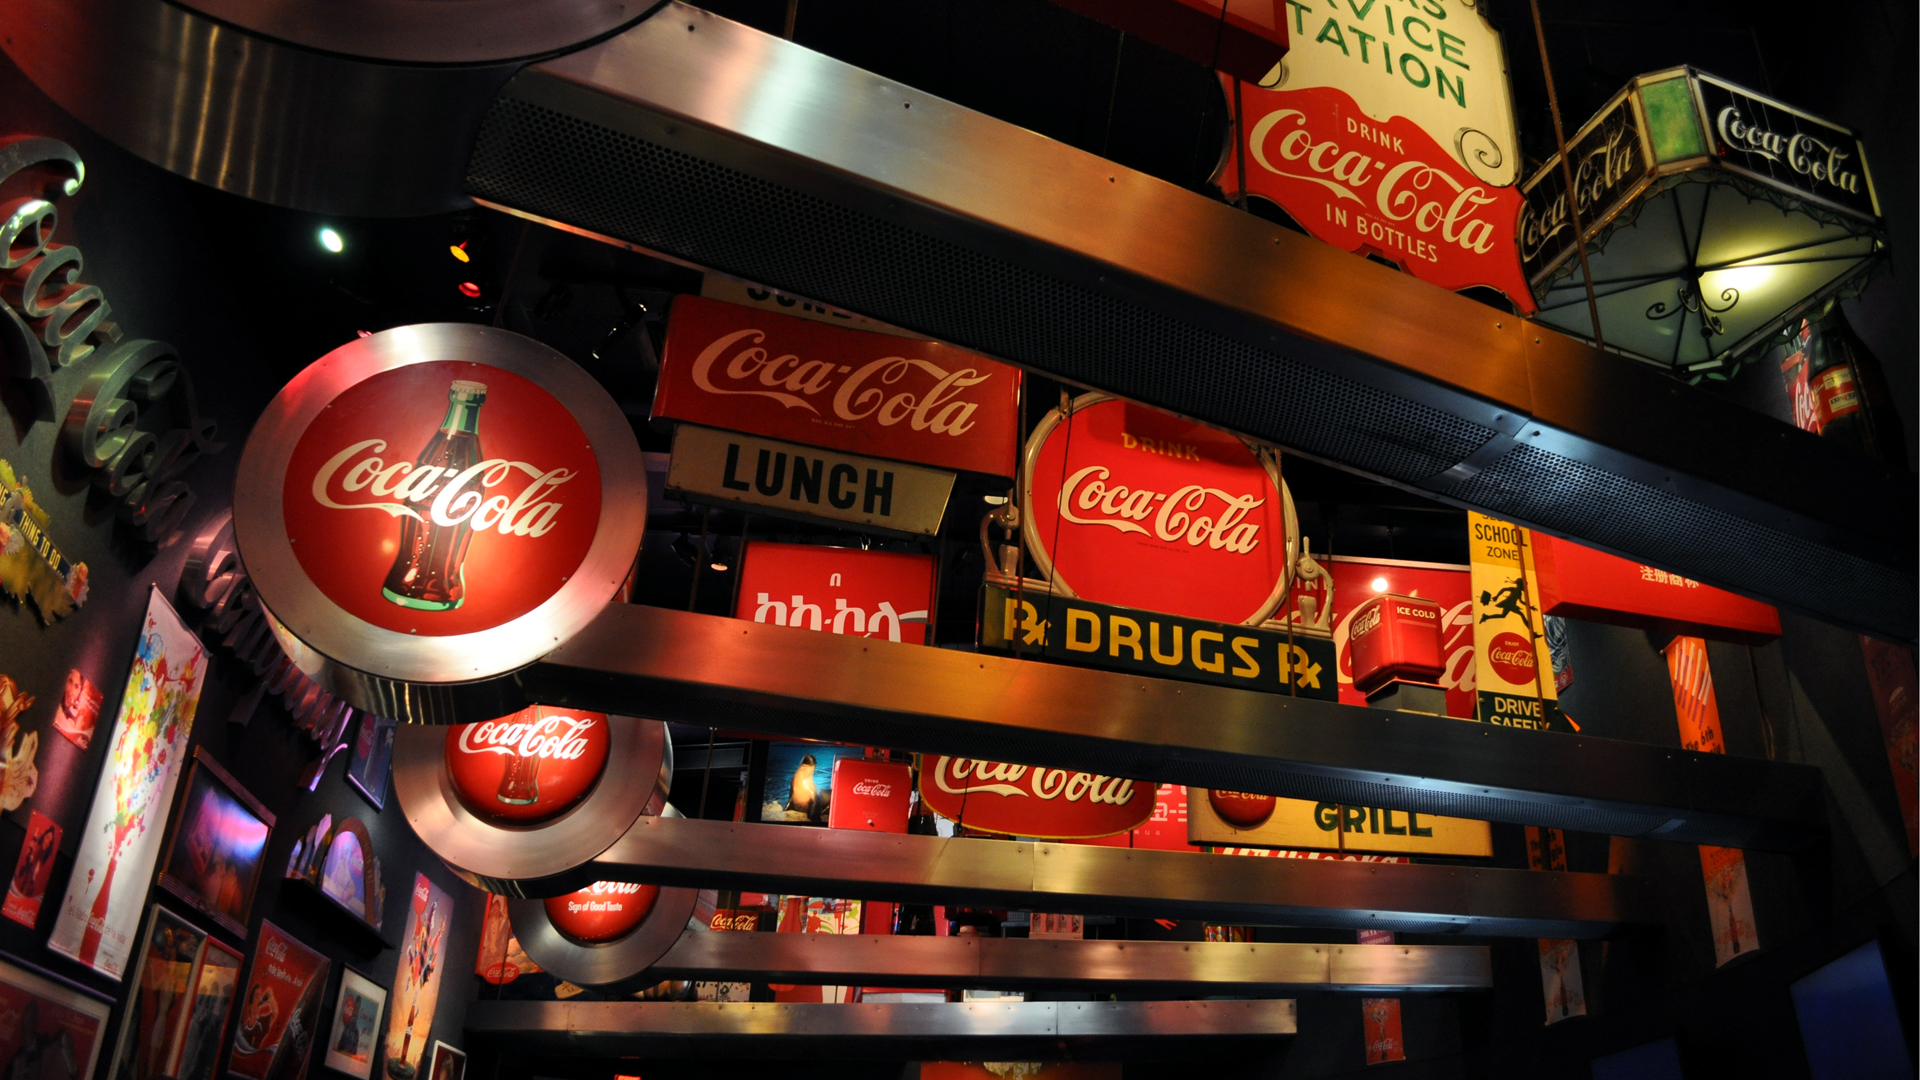 3d обои Вывески компании кока-кола... похоже на музей посвященный этому бредовому напитку (Coca-Cola, drink in bottles, lunch, drugs, grill)  бренд # 21143